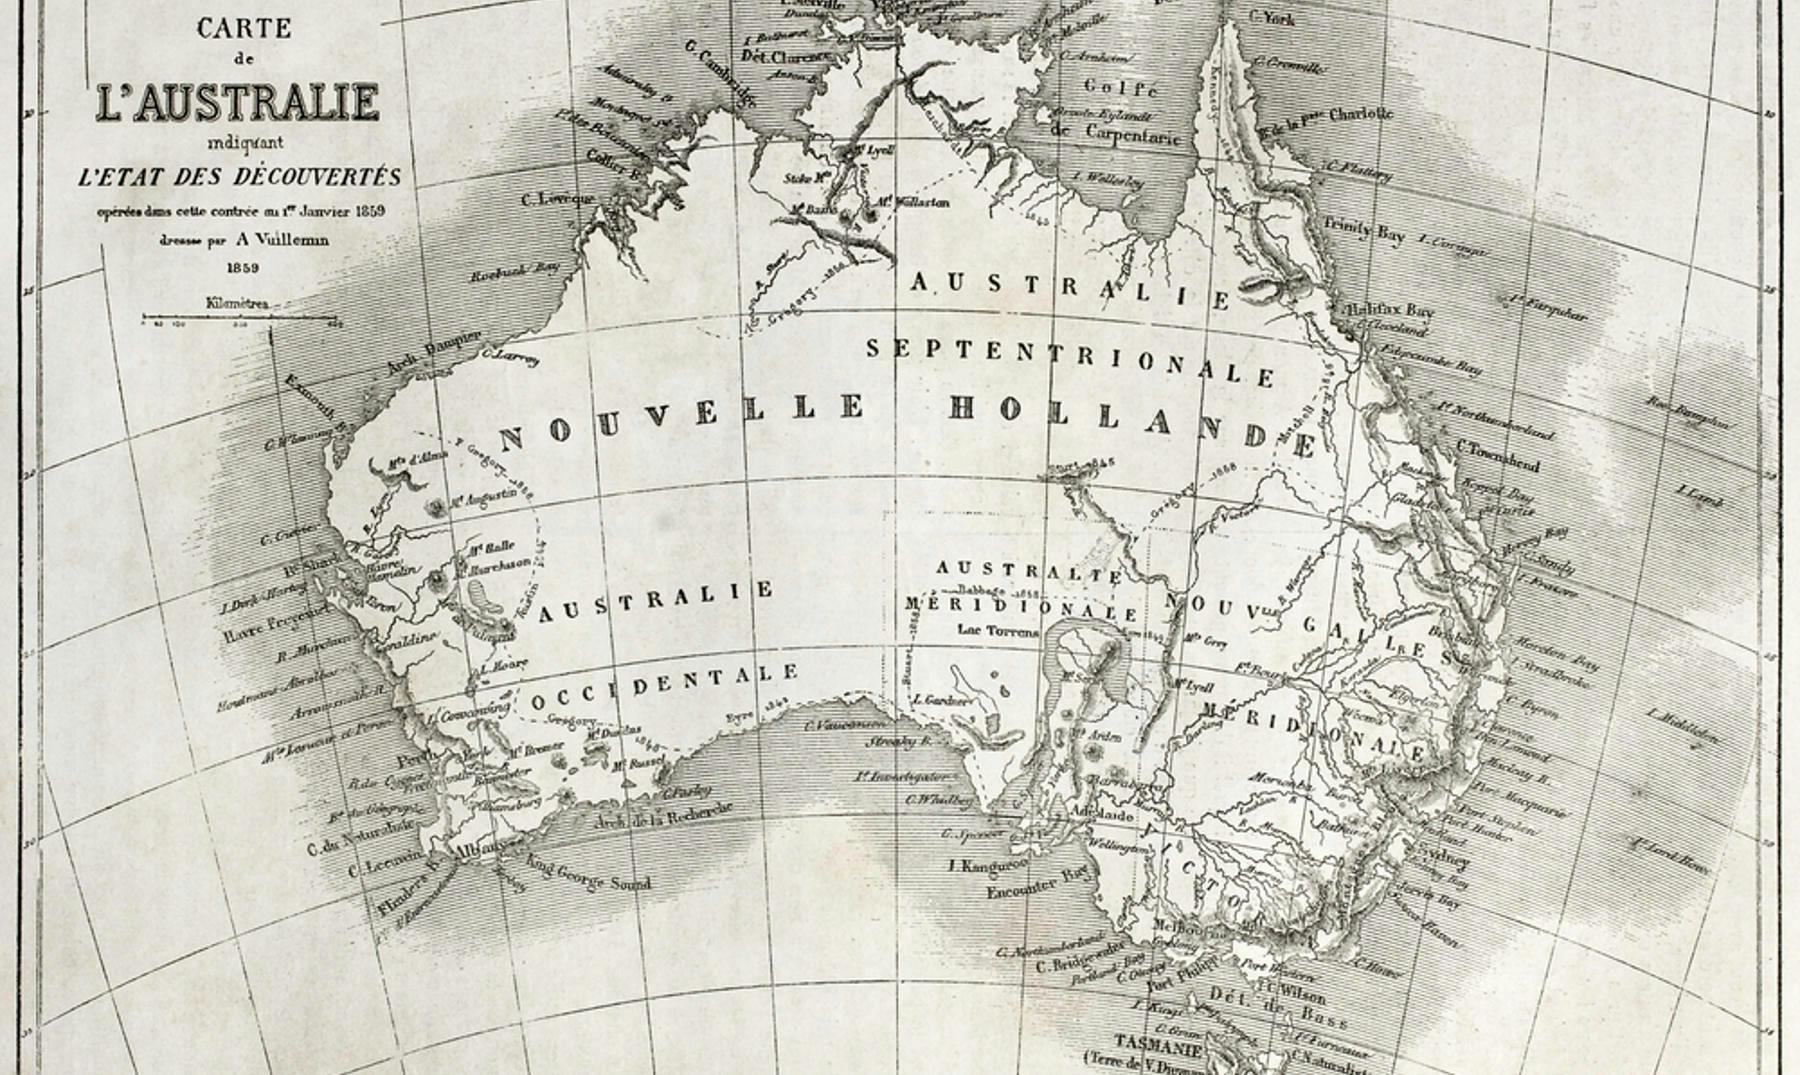 Historia de Australia | Descubrimiento de Australia y acontecimientos